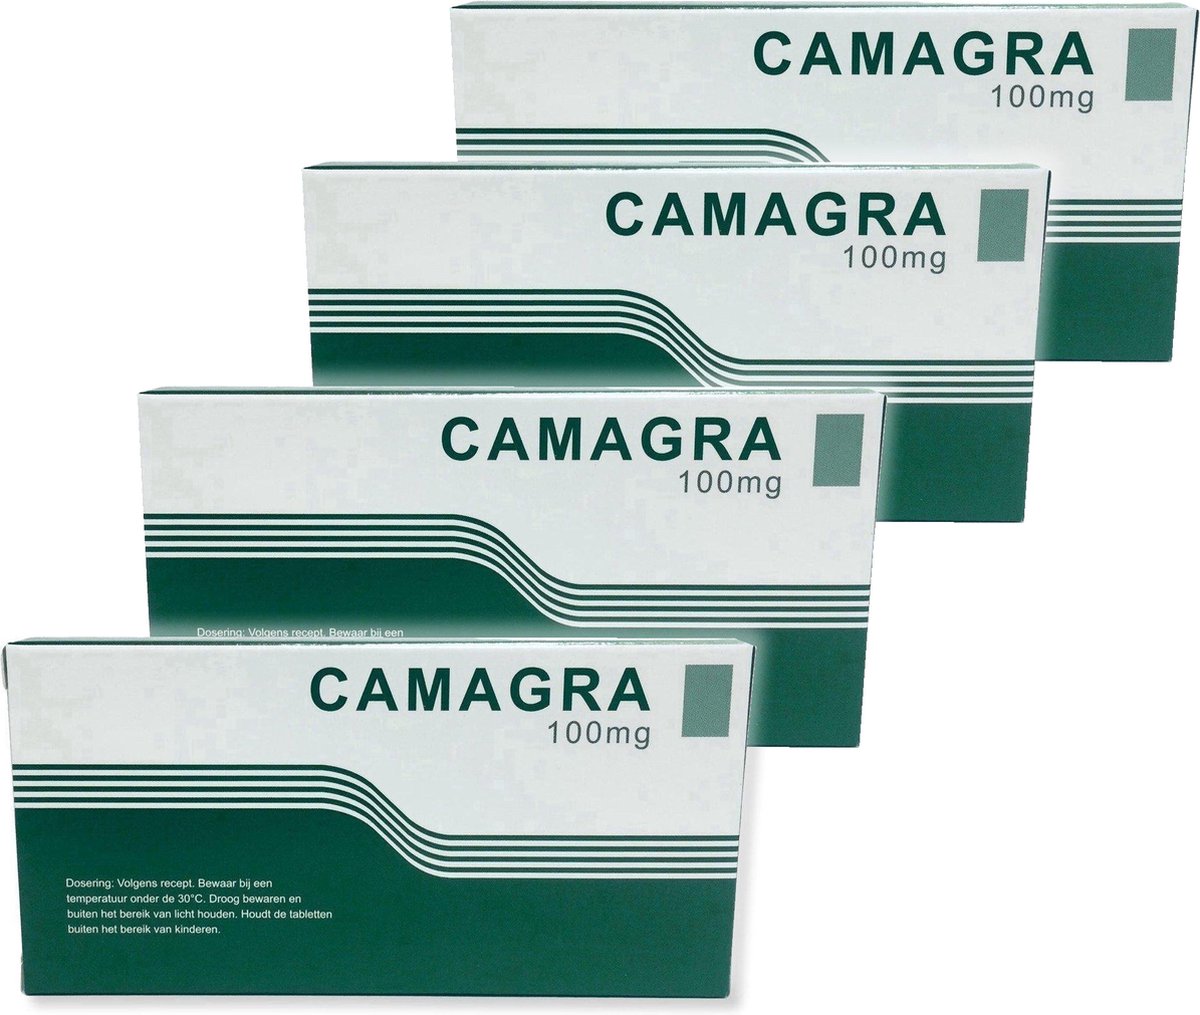 Camagra 100MG - Extra sterk - 20 Stuks - Zelfde sterkte als Kamagra, op 100% natuurlijke basis